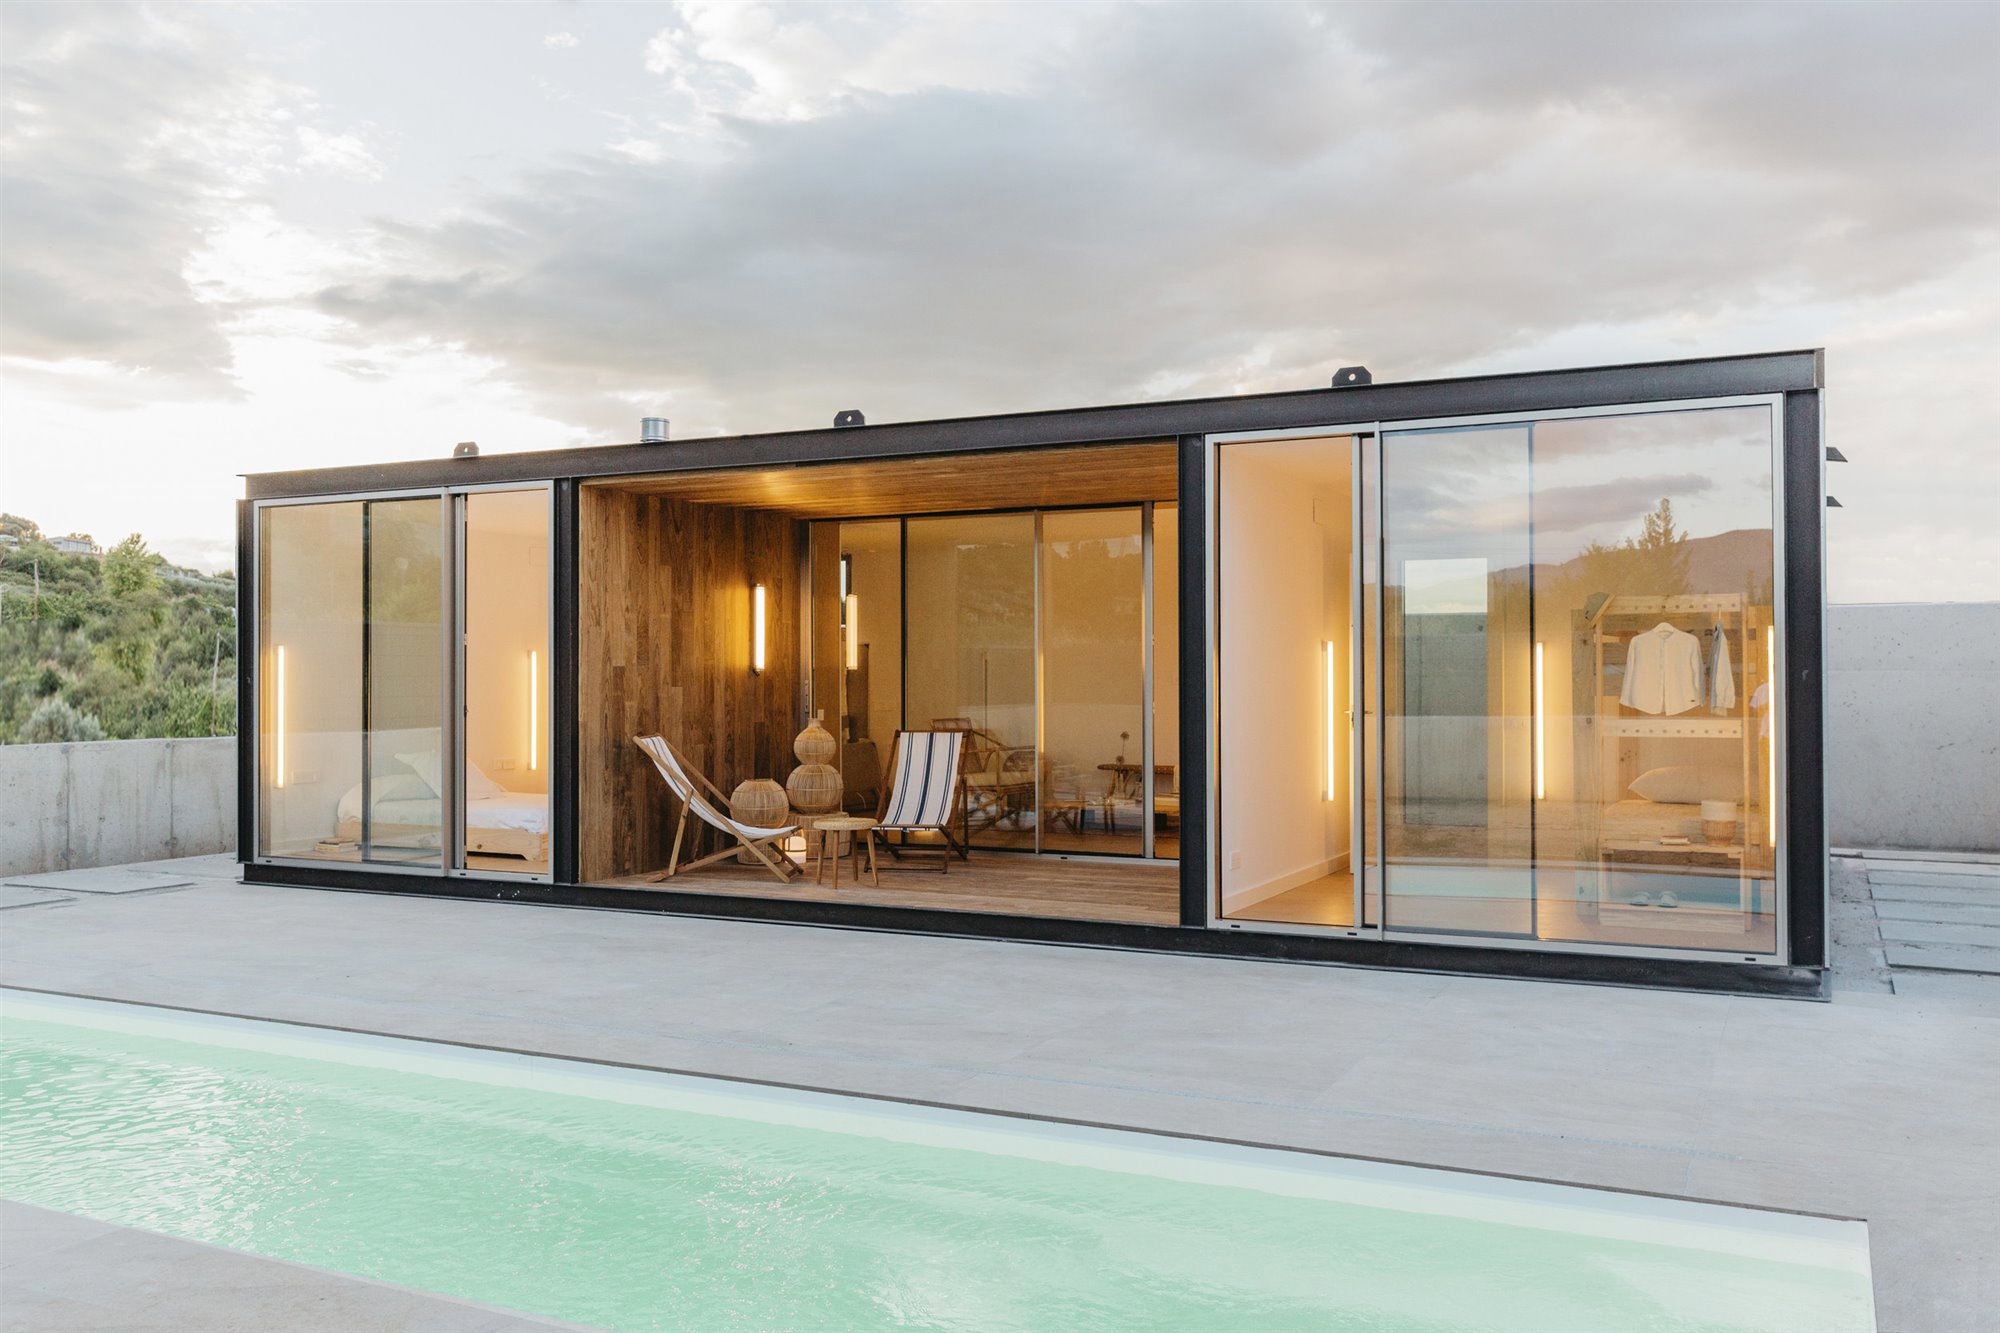 Una casa modular de 60 metros en La Rioja construida en 60 días